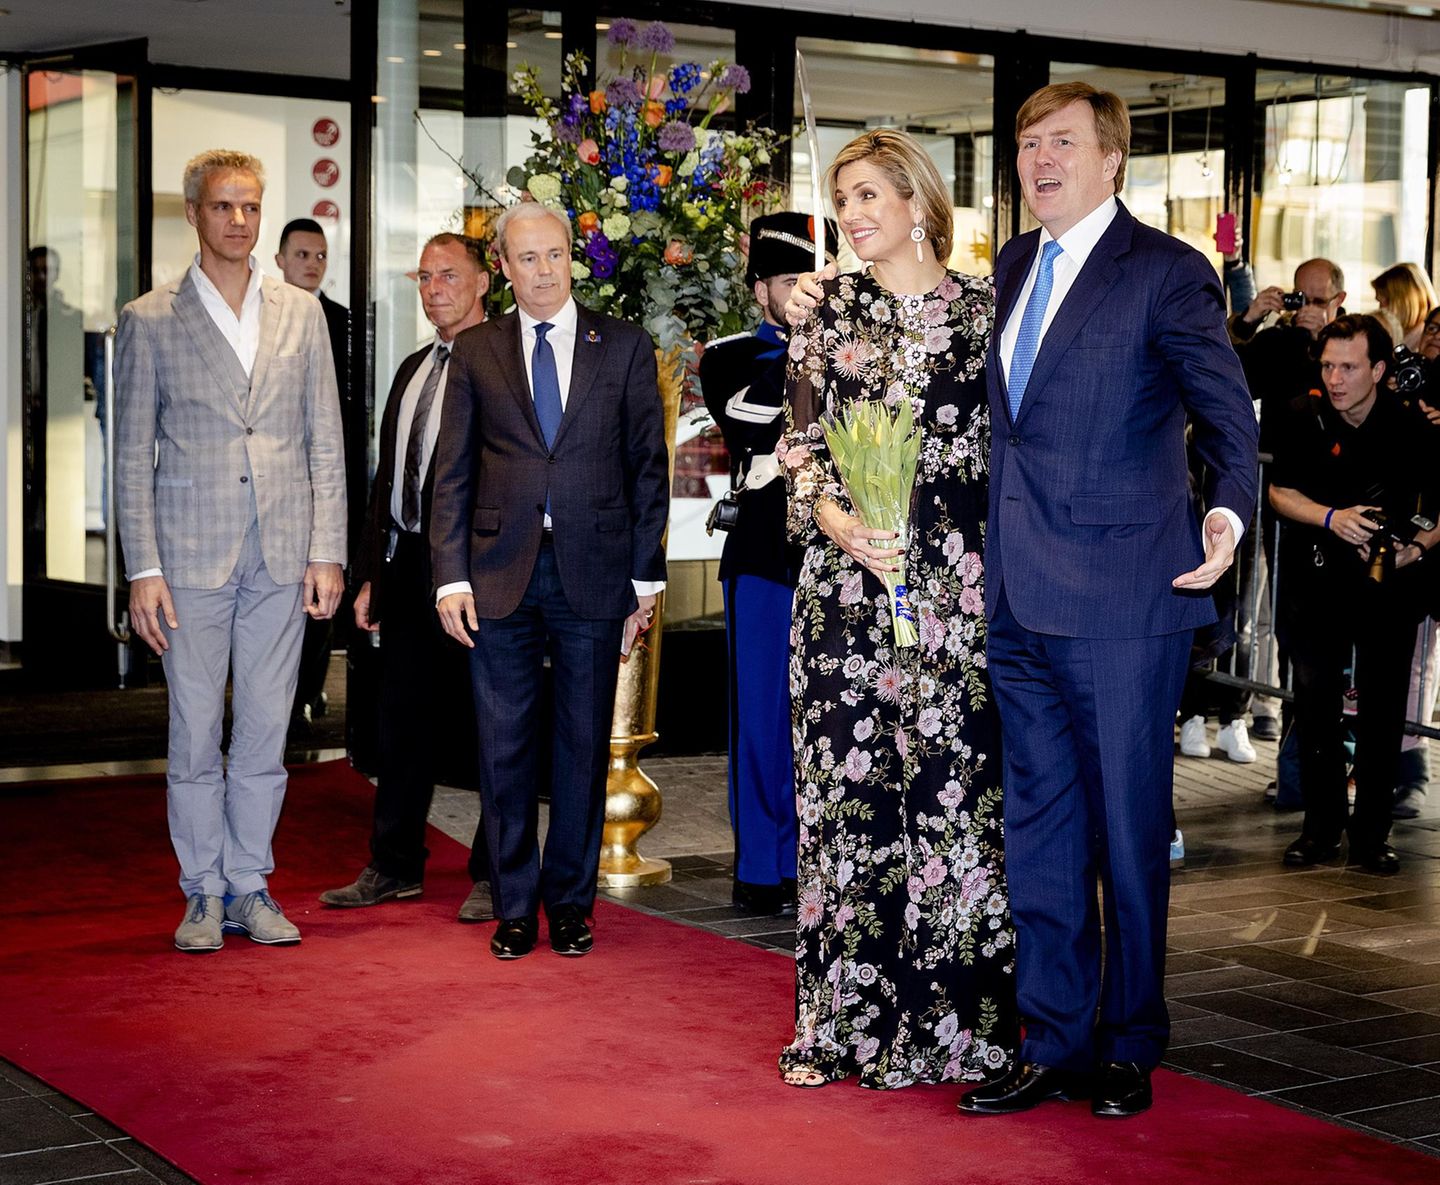 Gleiche Outfits der Royals: Königin Maxima im Blumenkleid